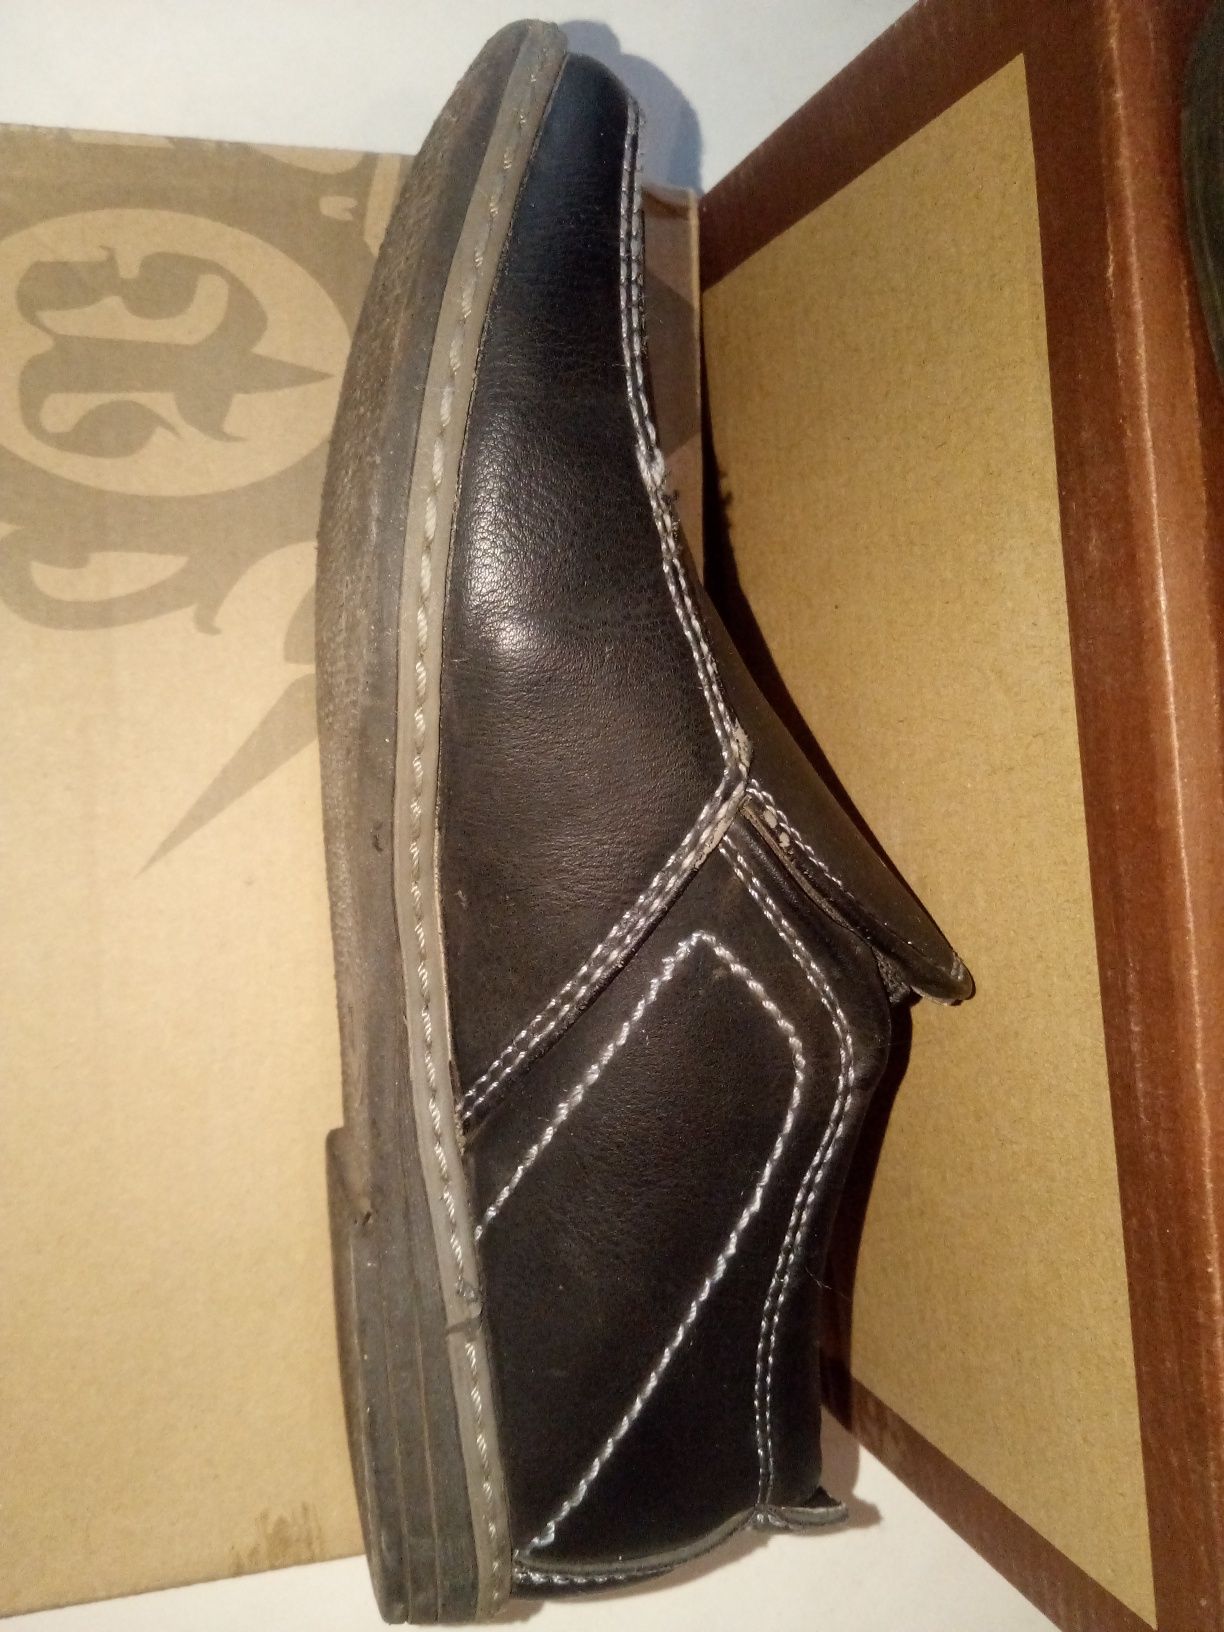 Туфли для мальчика Parliament. Черные. 30 размер.